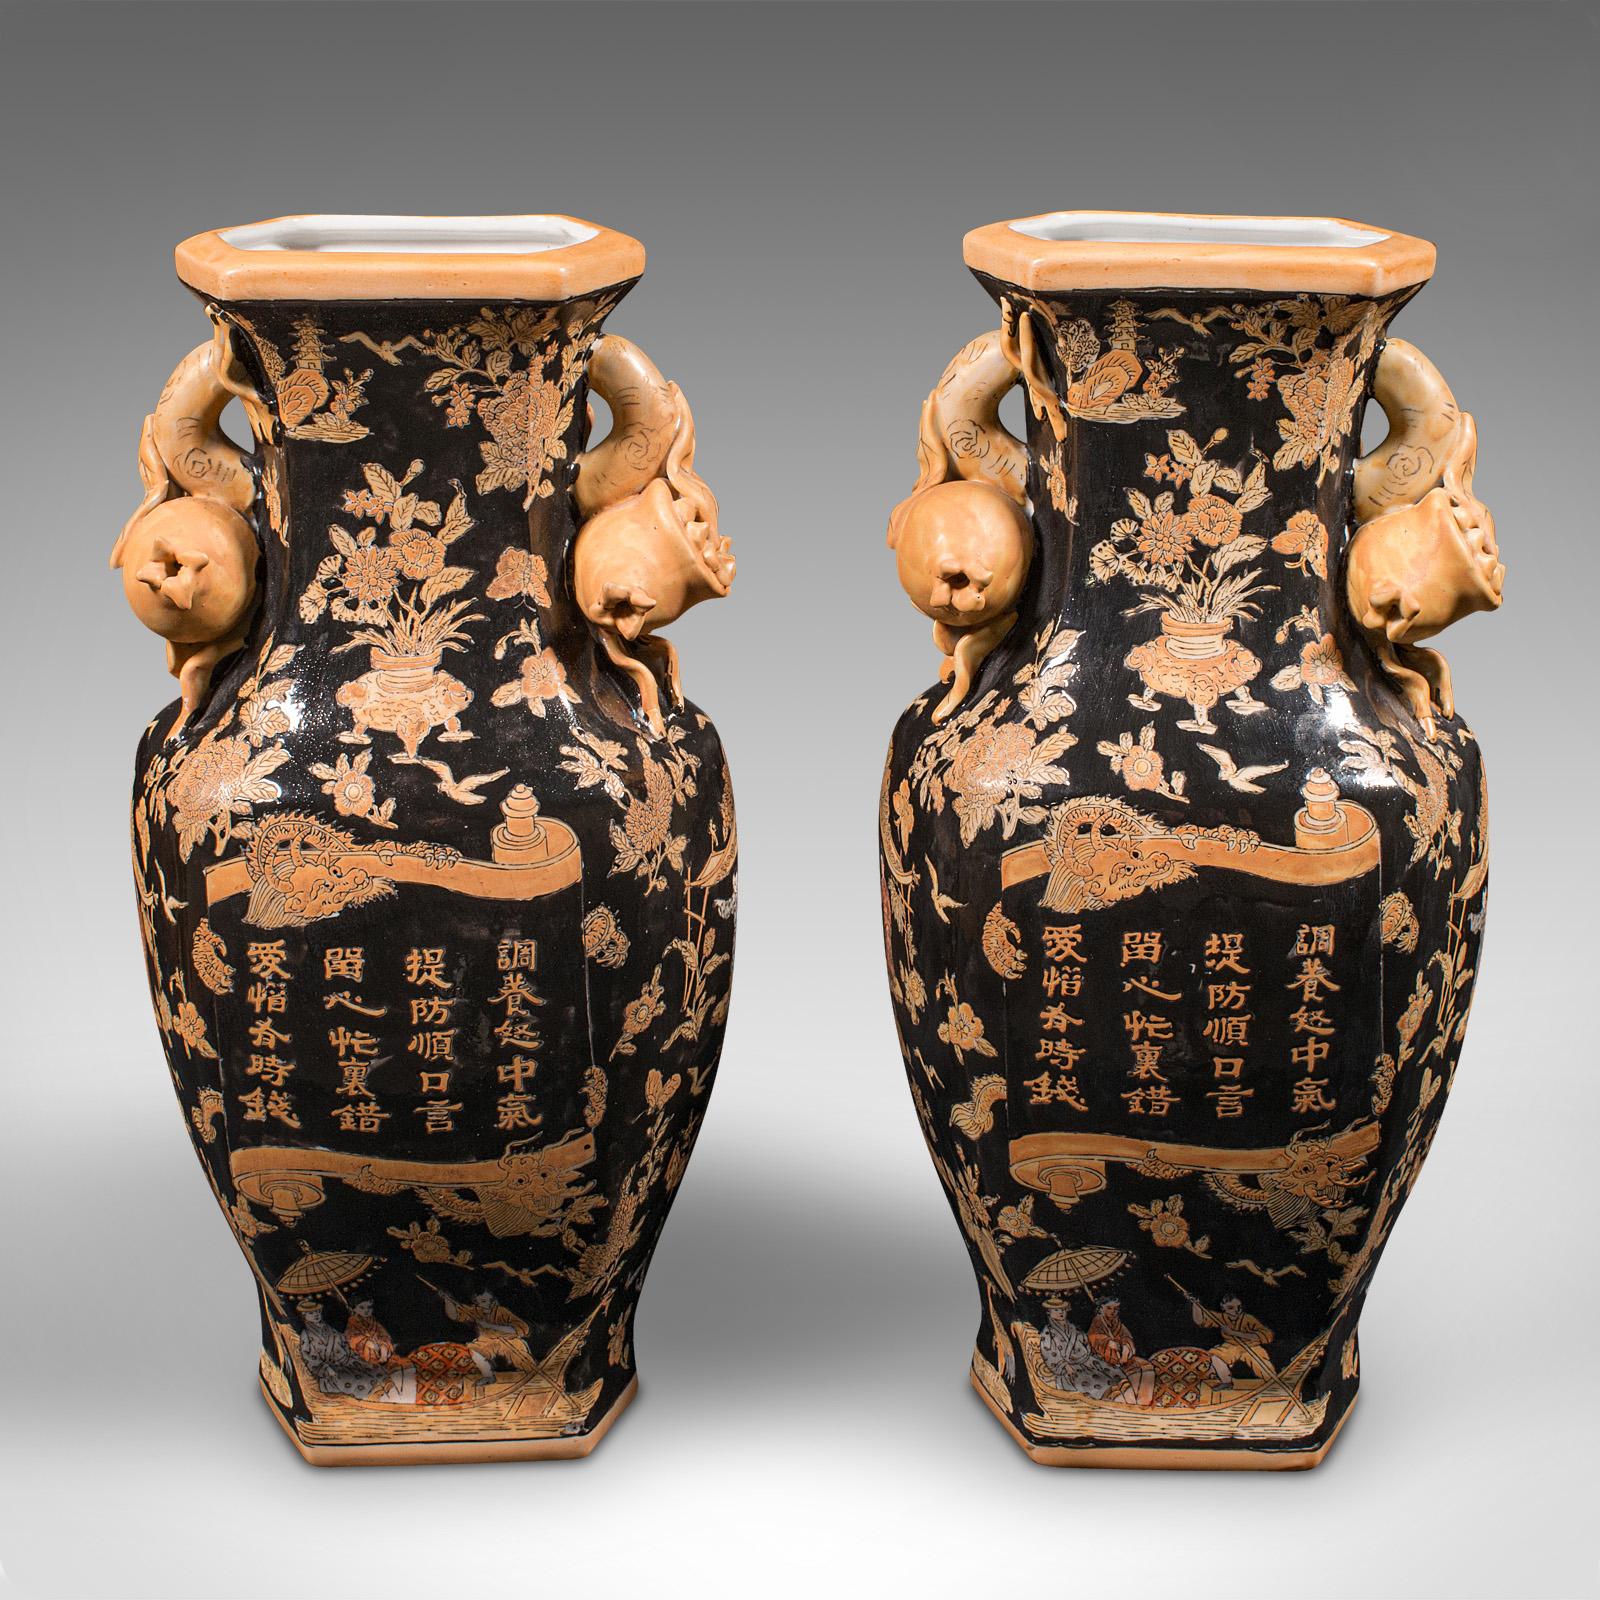 Il s'agit d'une paire de vases décoratifs vintage. Urne à fleurs séchées en céramique touristique chinoise, datant de la fin du 20e siècle, vers 1980.

Goût prononcé pour le renouveau de l'Art déco, avec un fond noir distinctif
Présentant une